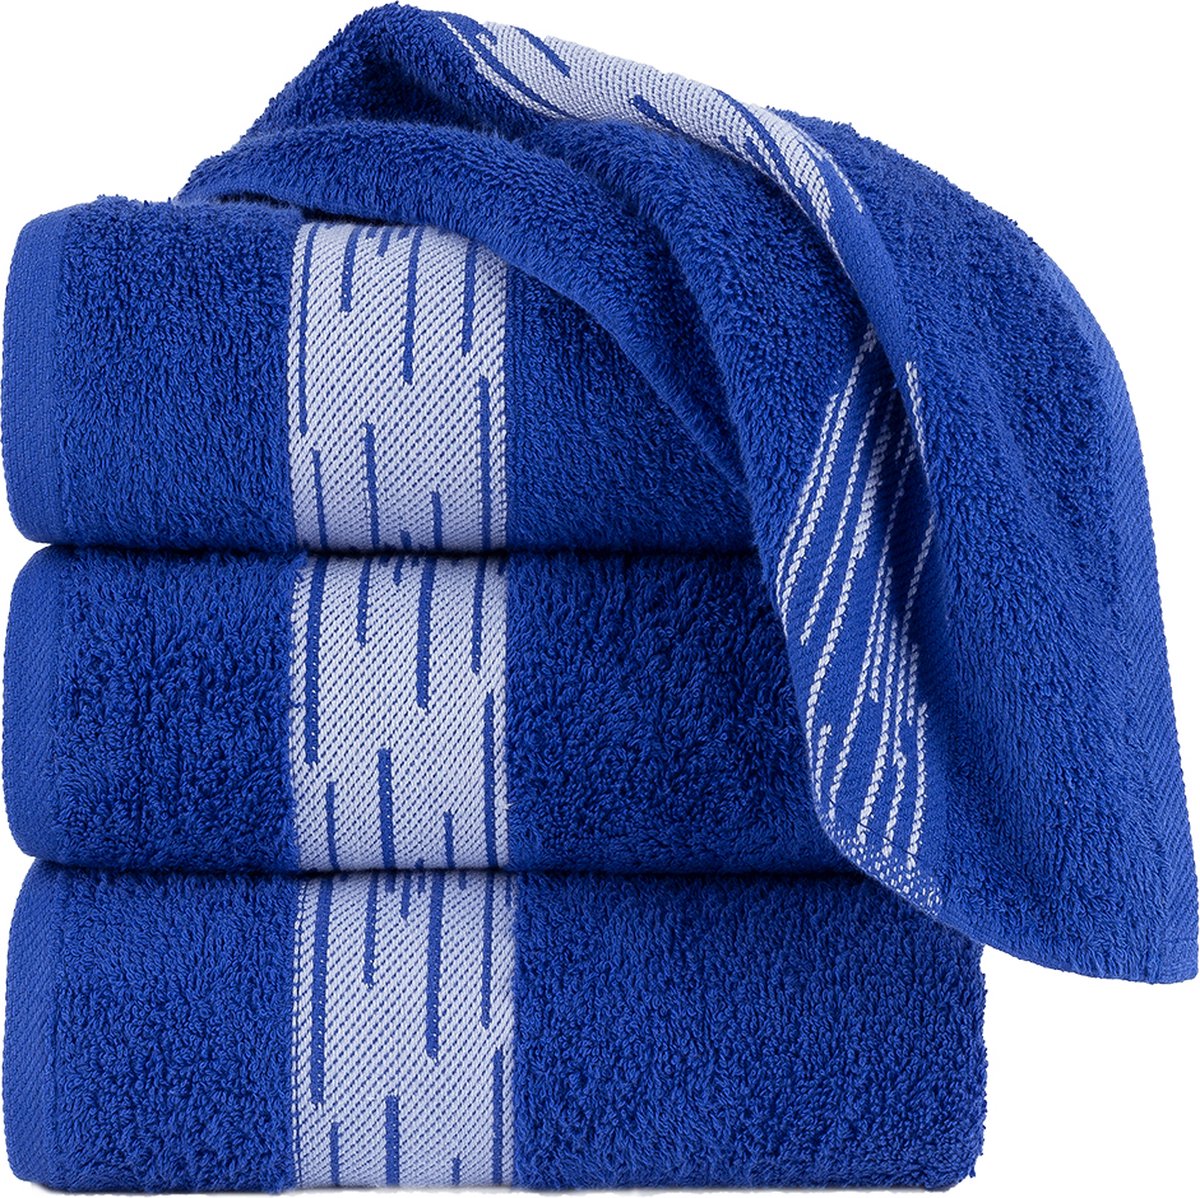 Homéé Handdoeken Essentials 550g. m² 50x100cm 100% katoen badstof set van 4 stuks royal blauw